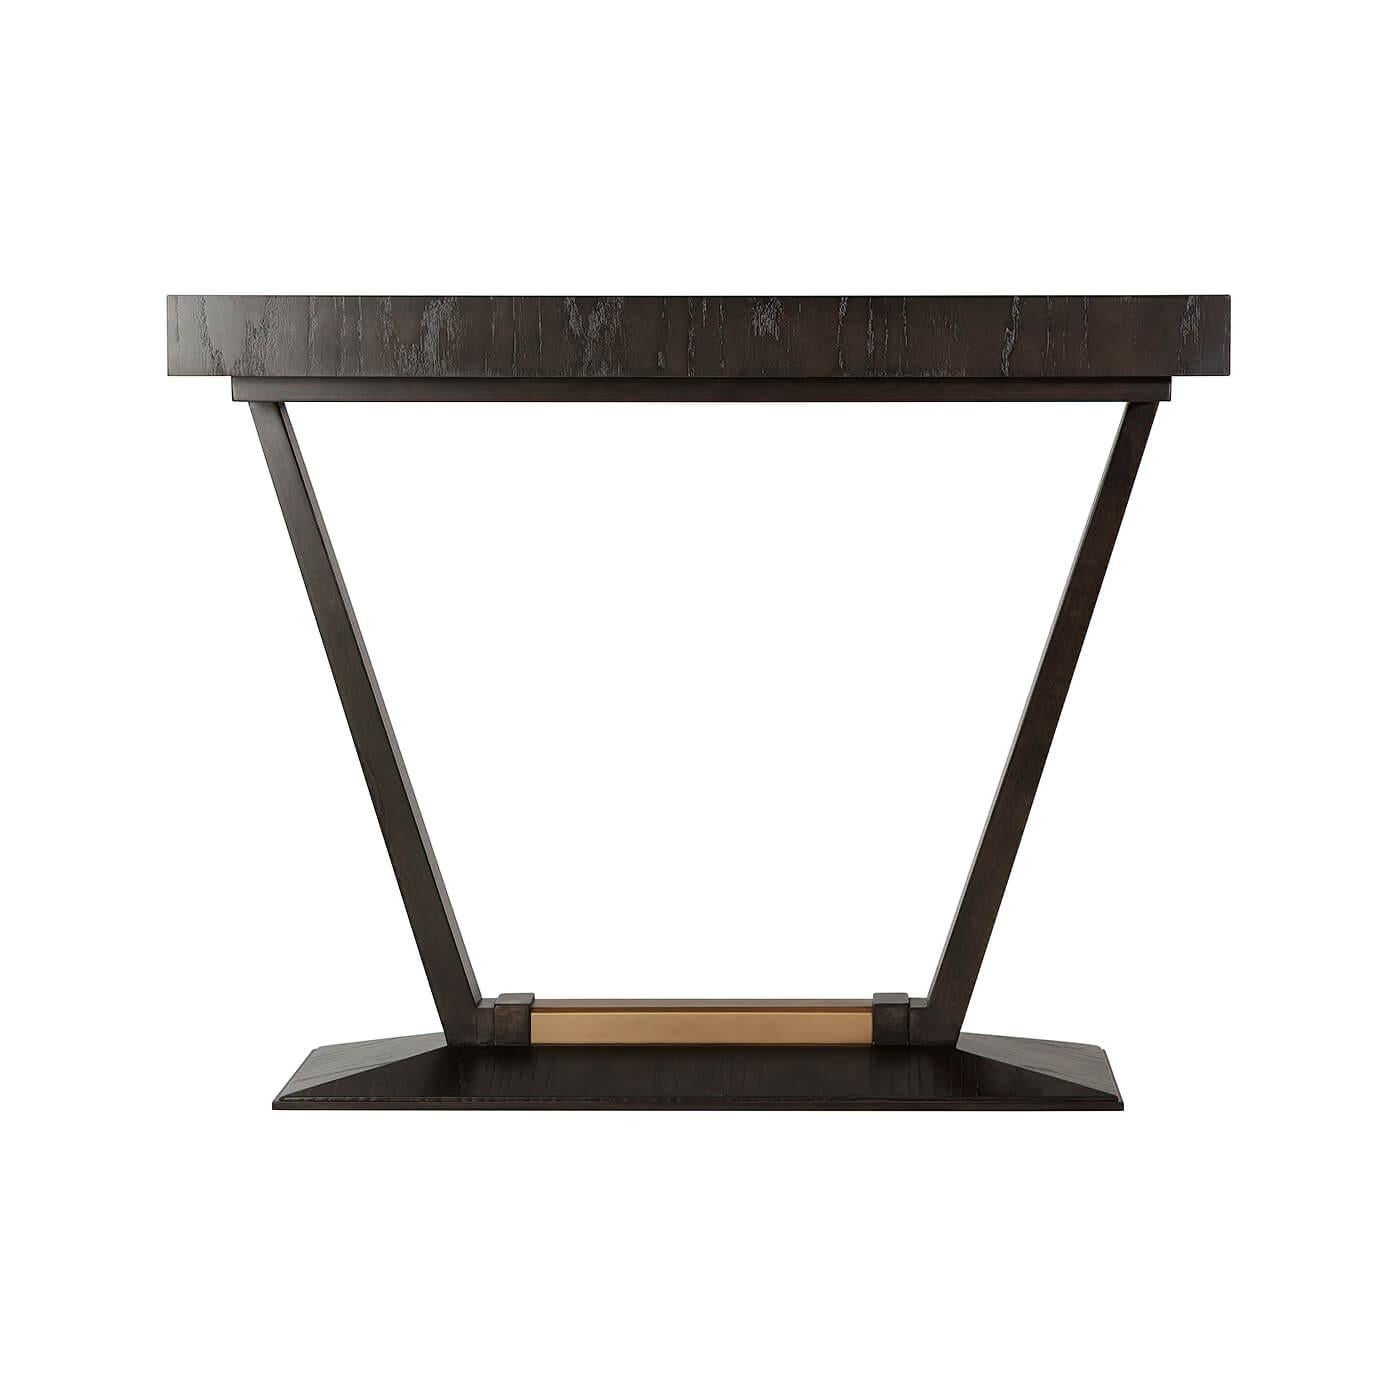 Table console rectangulaire en placage de frêne de style Art Déco français avec une base biseautée avec des accents de finition en bronze et soutenue par des pieds coniques angulaires.

Dimensions : 39.75